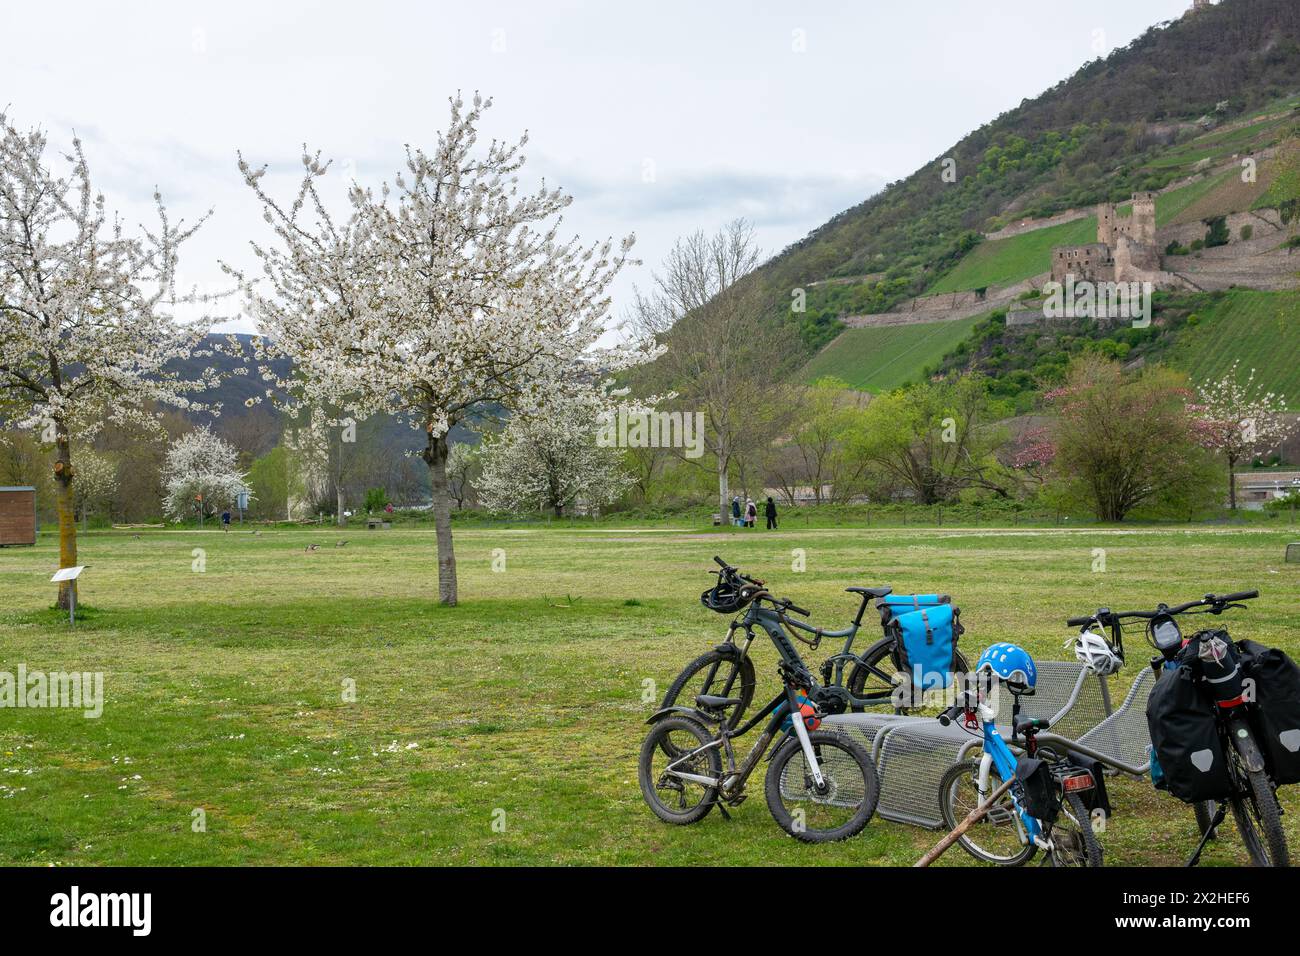 Schöner Park in Europa im Frühling in der Nähe eines Flusses. Viele Fahrräder in der Nähe eines blühenden Baumes. Entspannen Sie sich in der Natur. Stockfoto